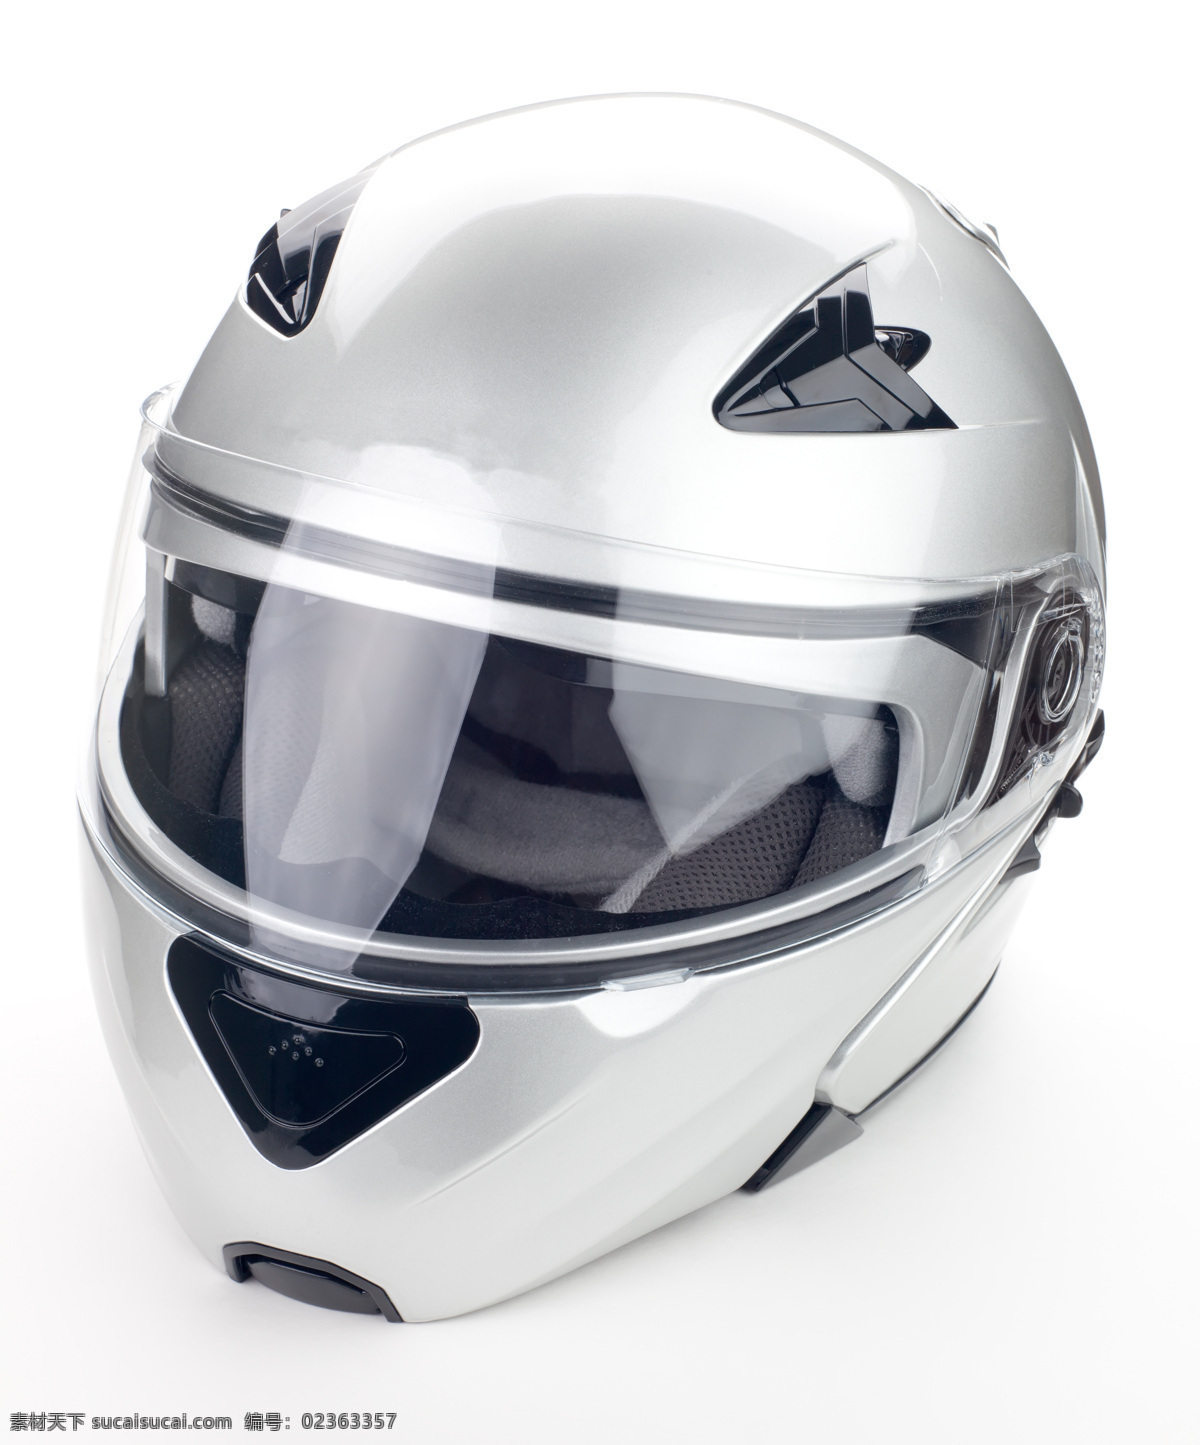 白色 摩托车 头盔 摩托车头盔 安全帽 钢盔帽 摩托车帽子 汽车图片 现代科技